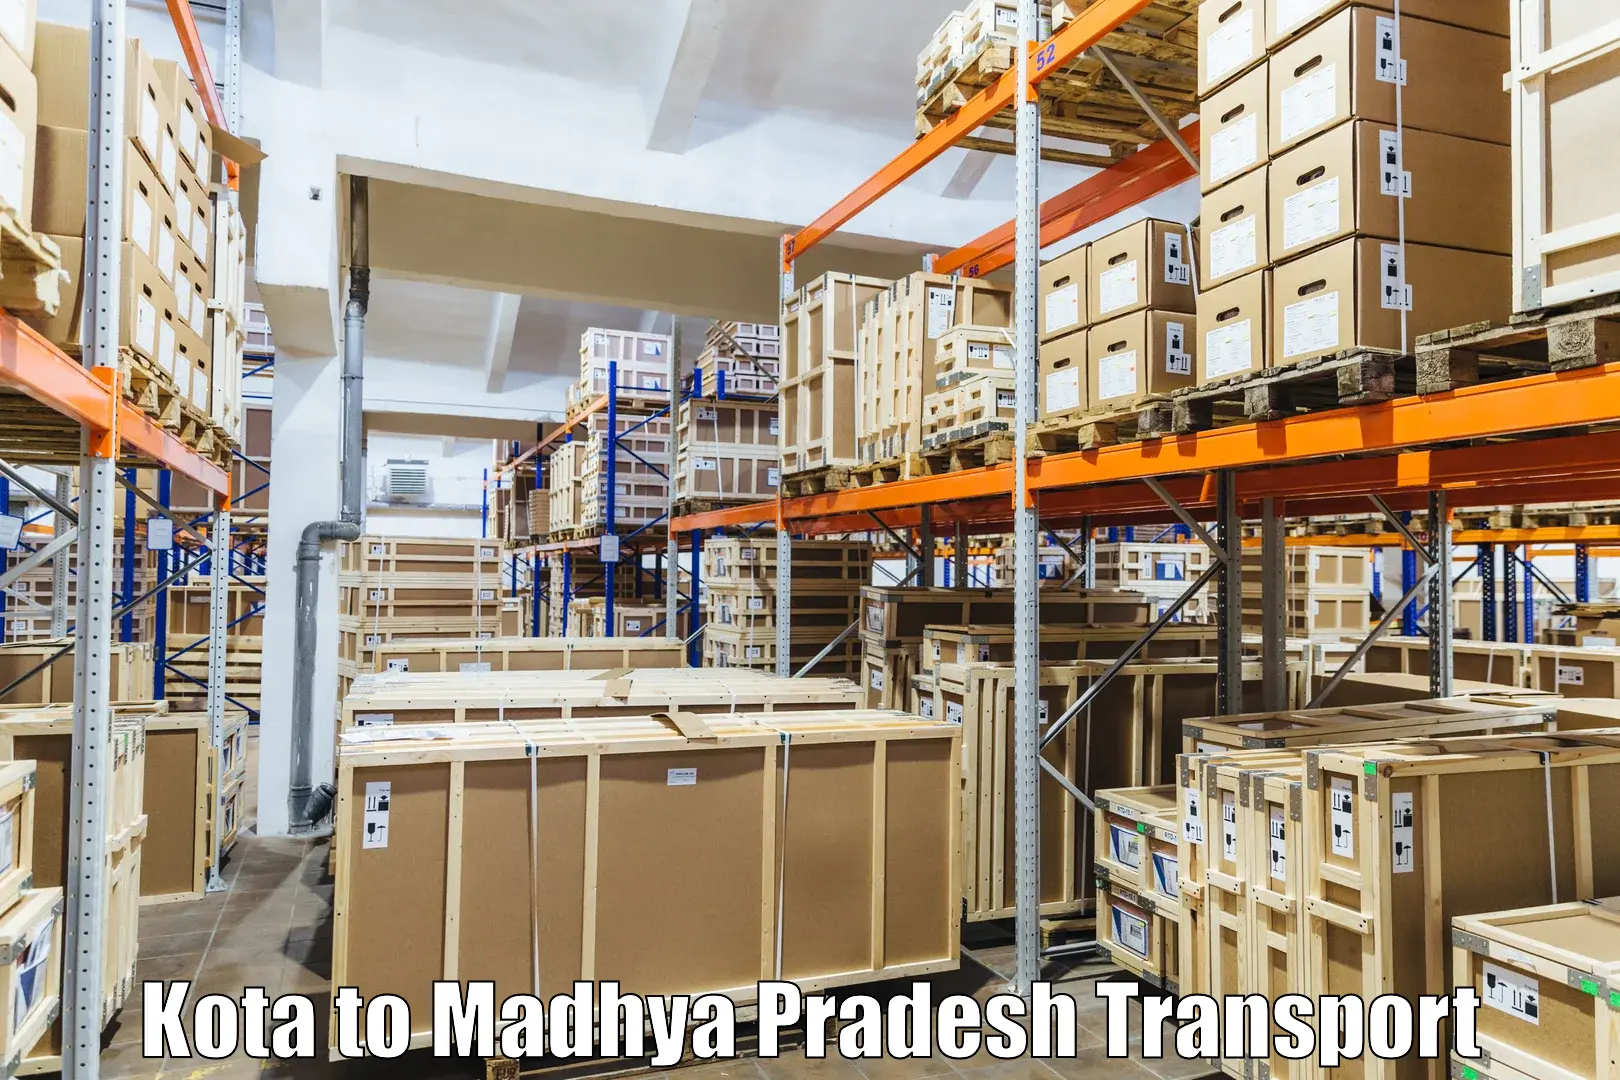 Furniture transport service Kota to Prithvipur